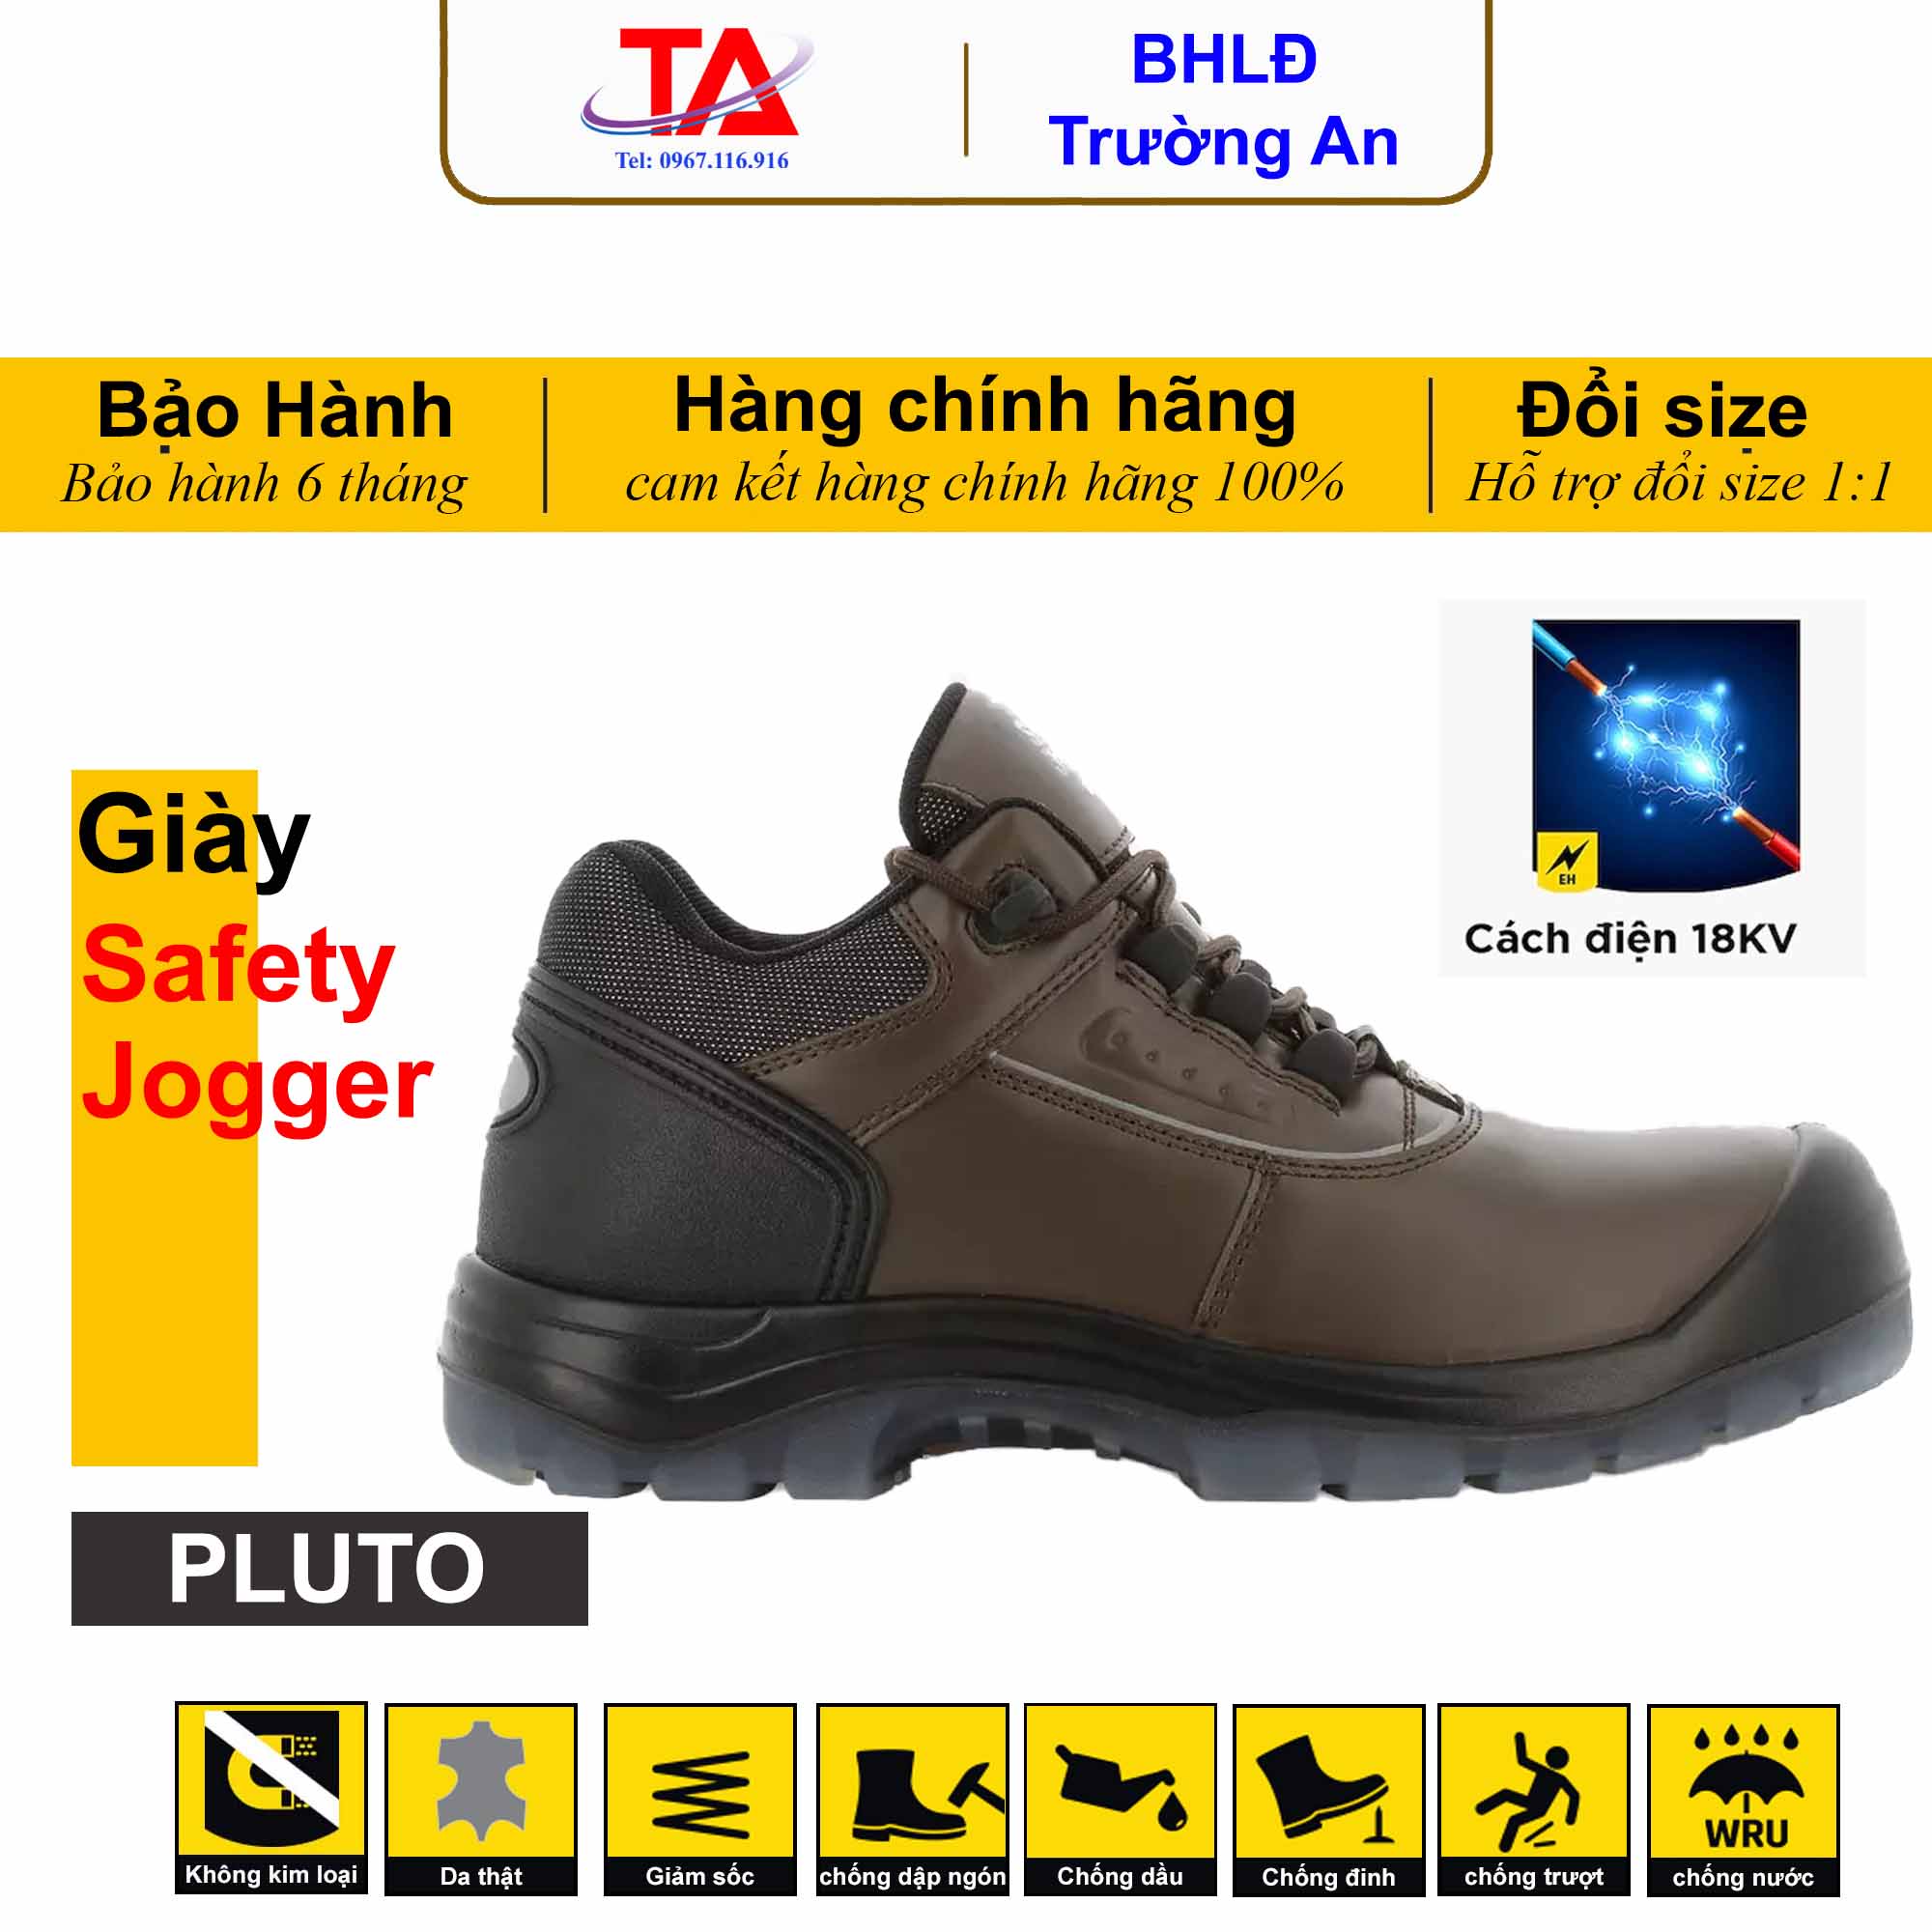 Giày bảo hộ cách điện Safety Jogger Pluto